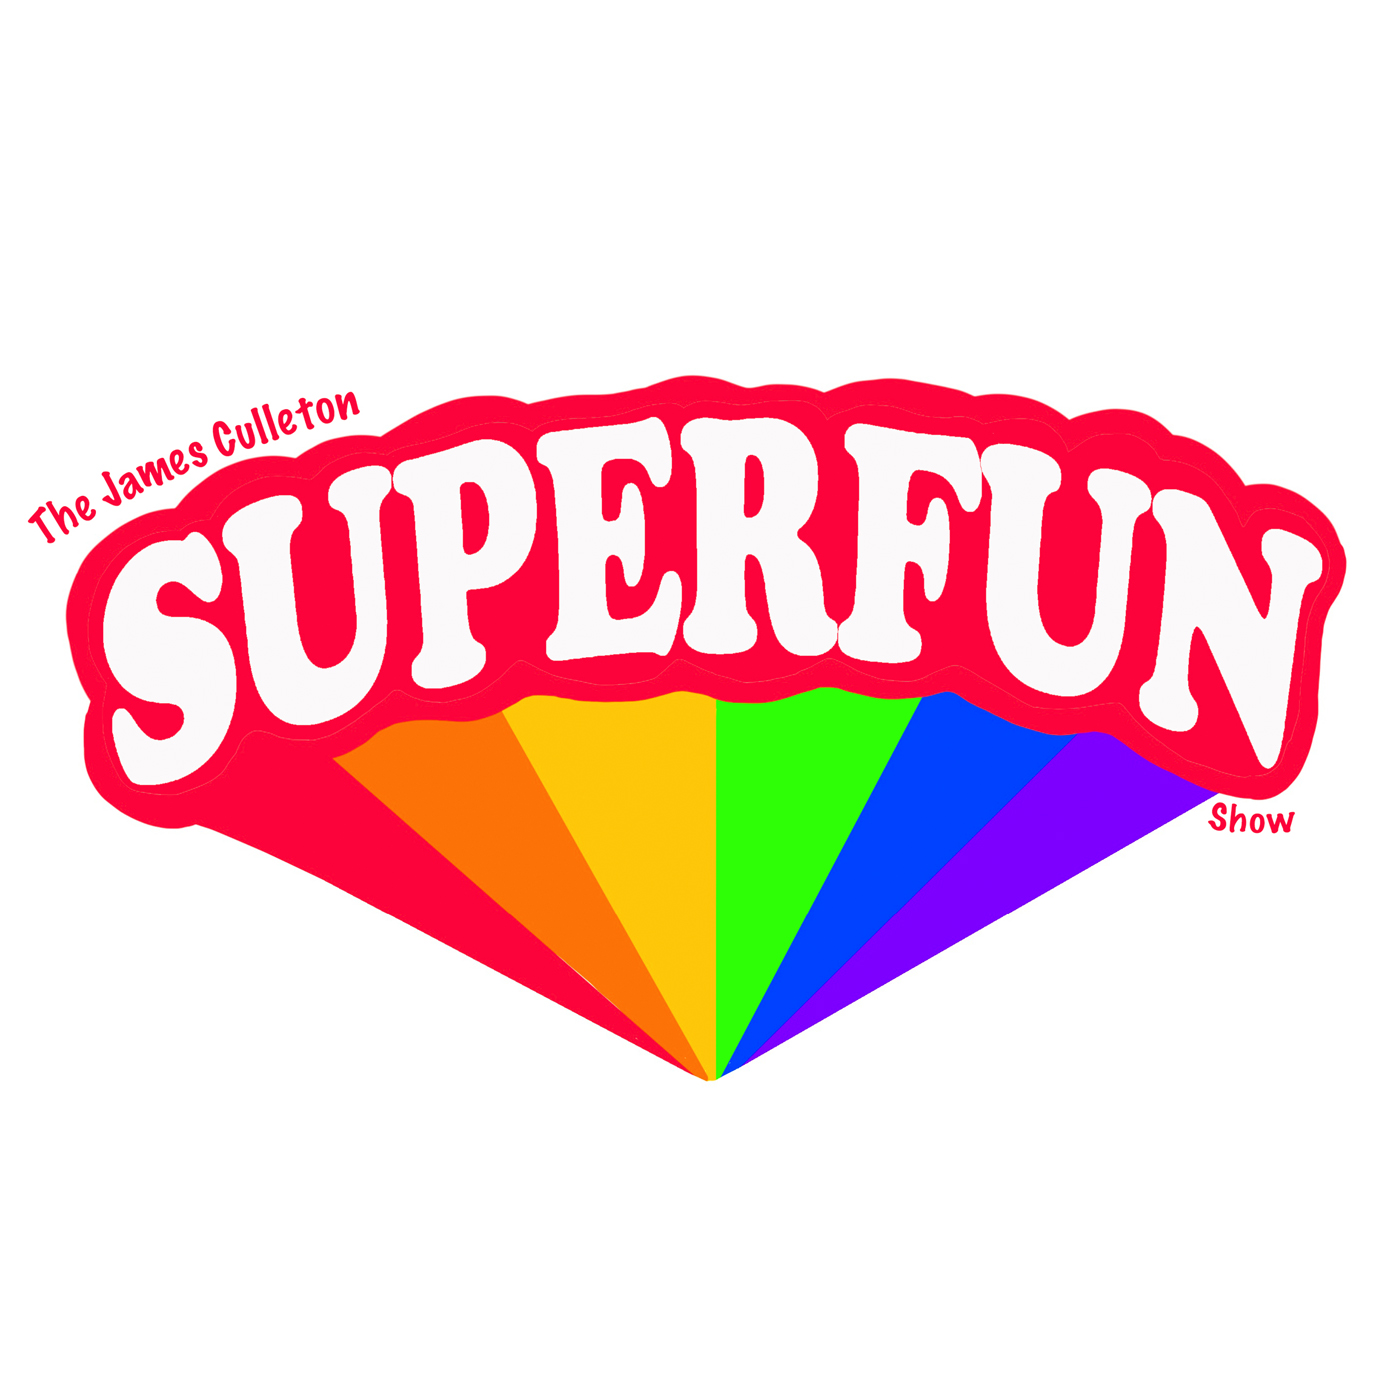 Superfun Kickstarter!